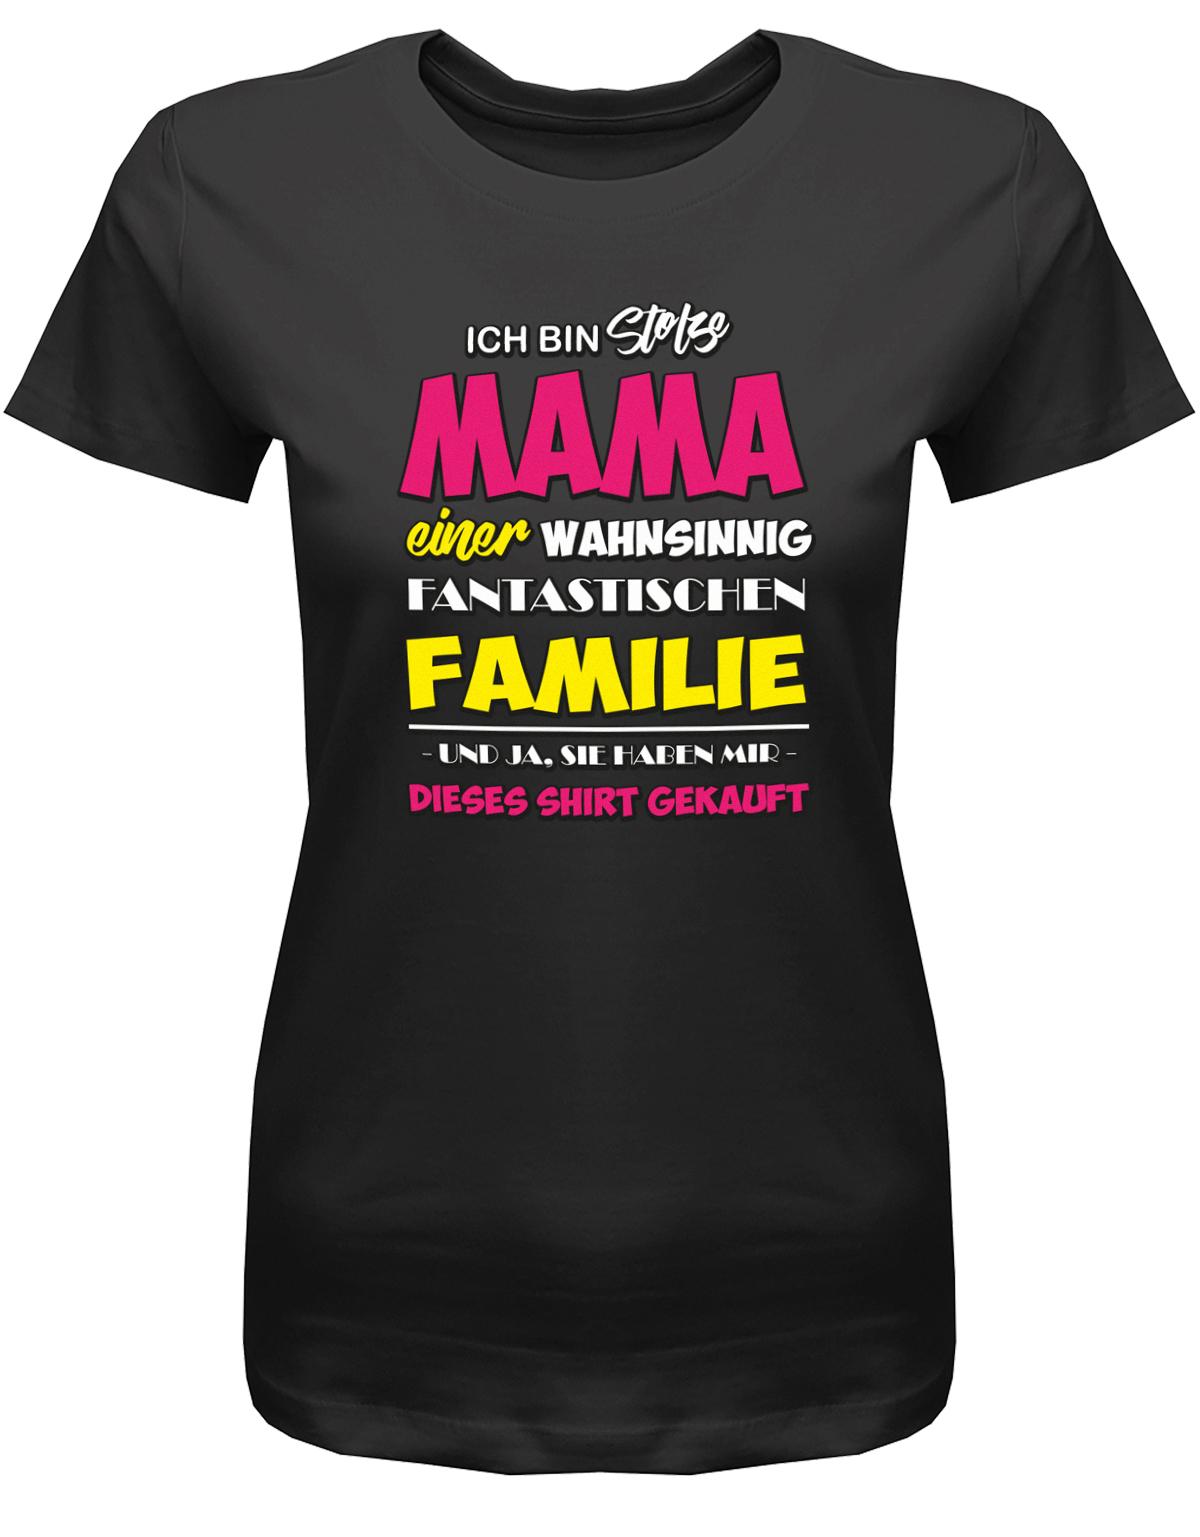 Ich-bin-stolze-mama-einer-Familie-Damen-Shirt-SChwarz